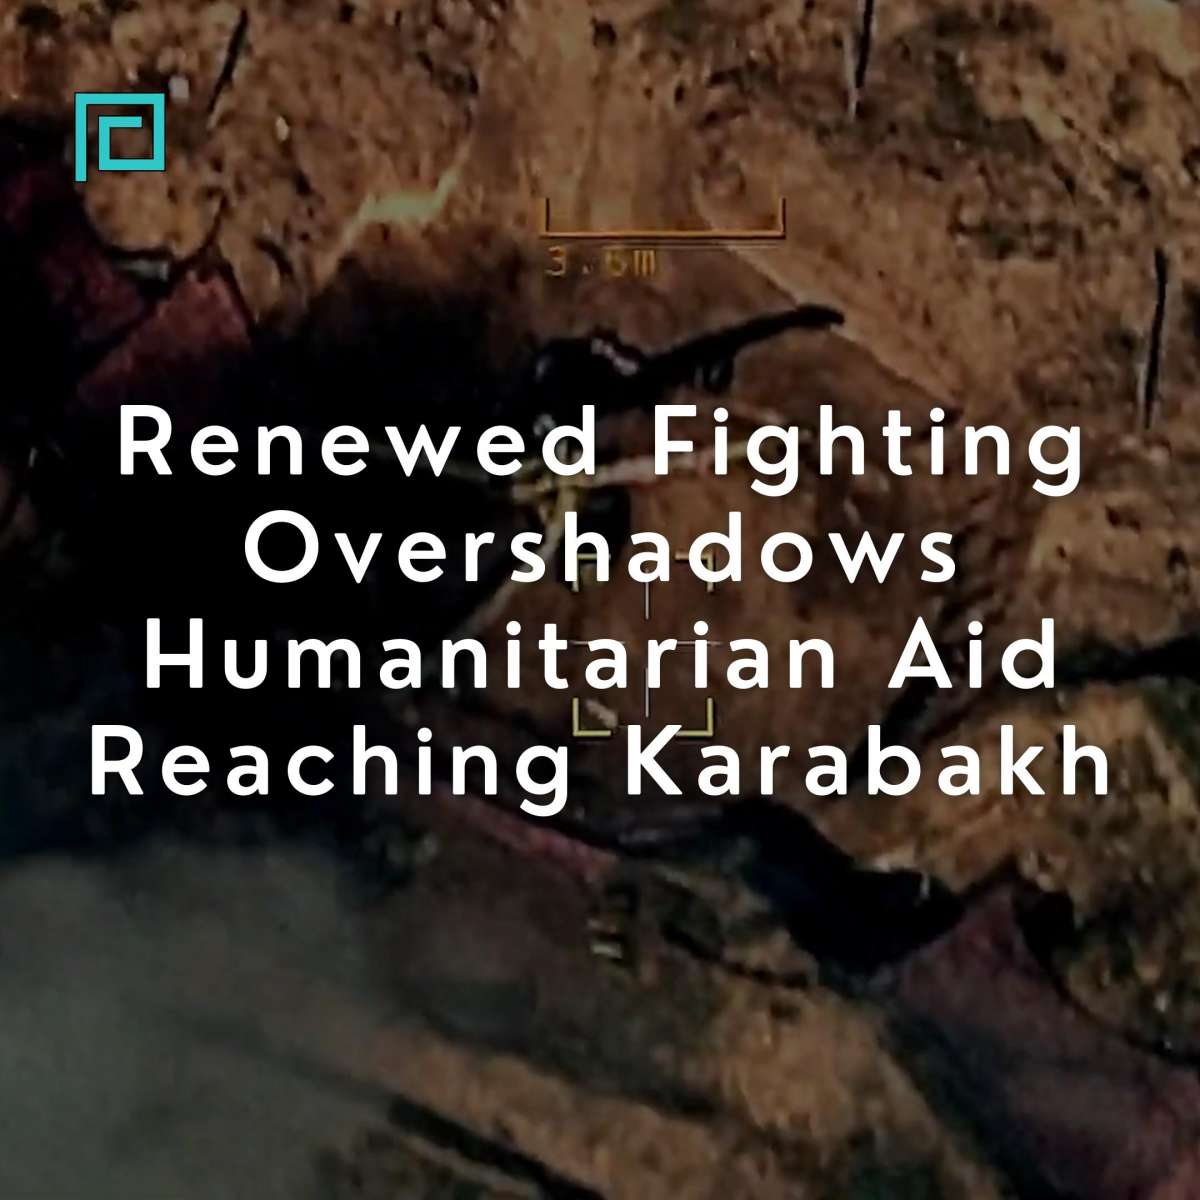 Renewed fighting amid humanitarian aid in Karabakh